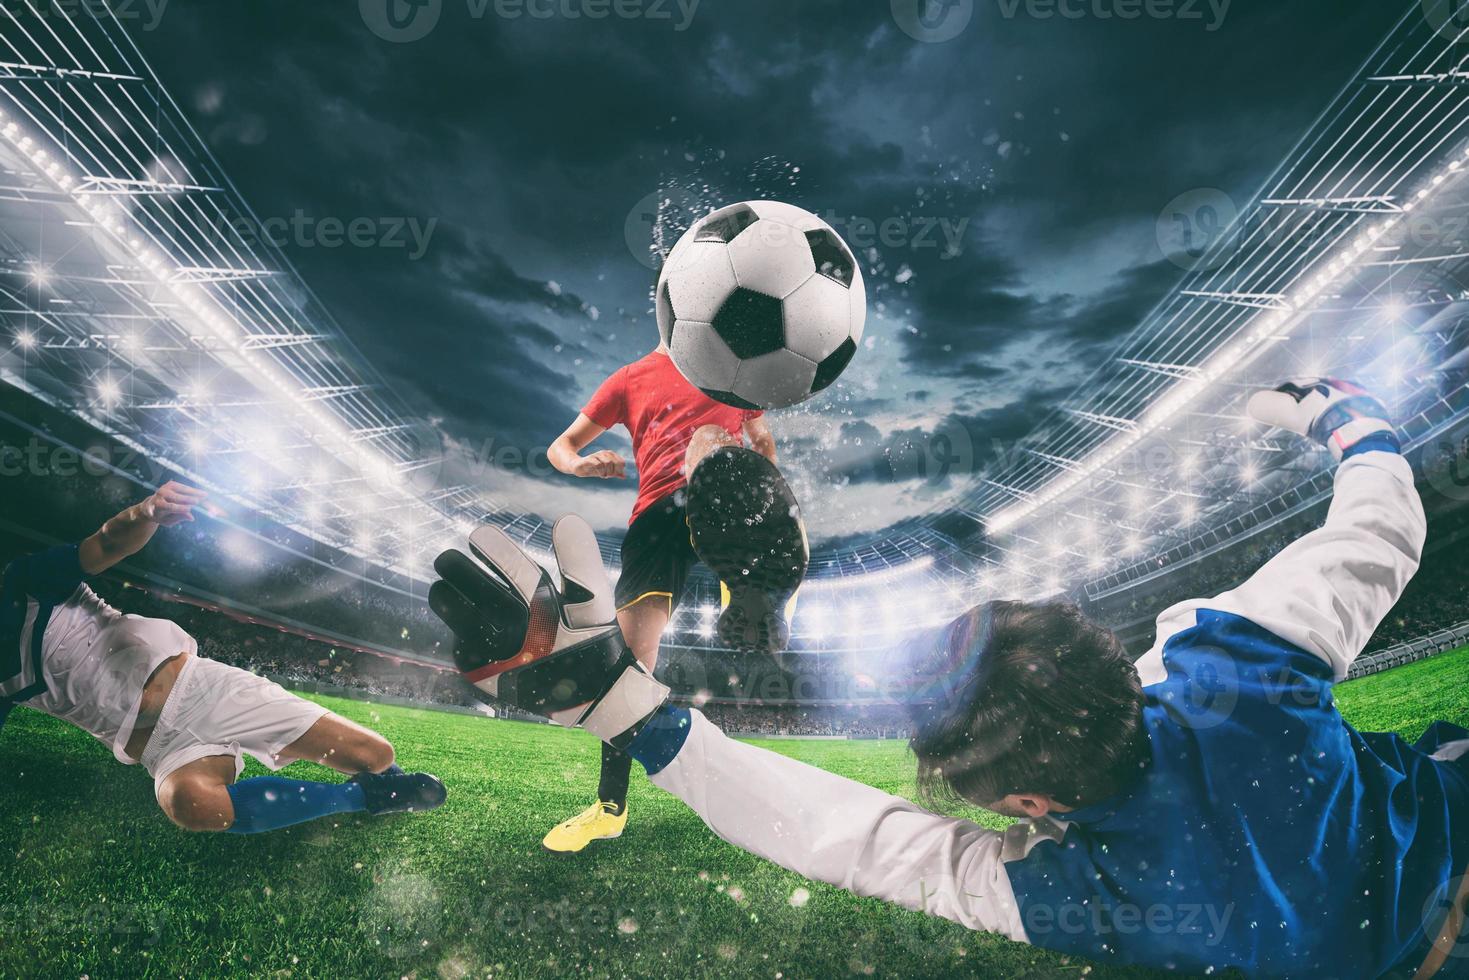 proche en haut de une Football action scène avec en compétition football joueurs à le stade pendant une nuit rencontre photo